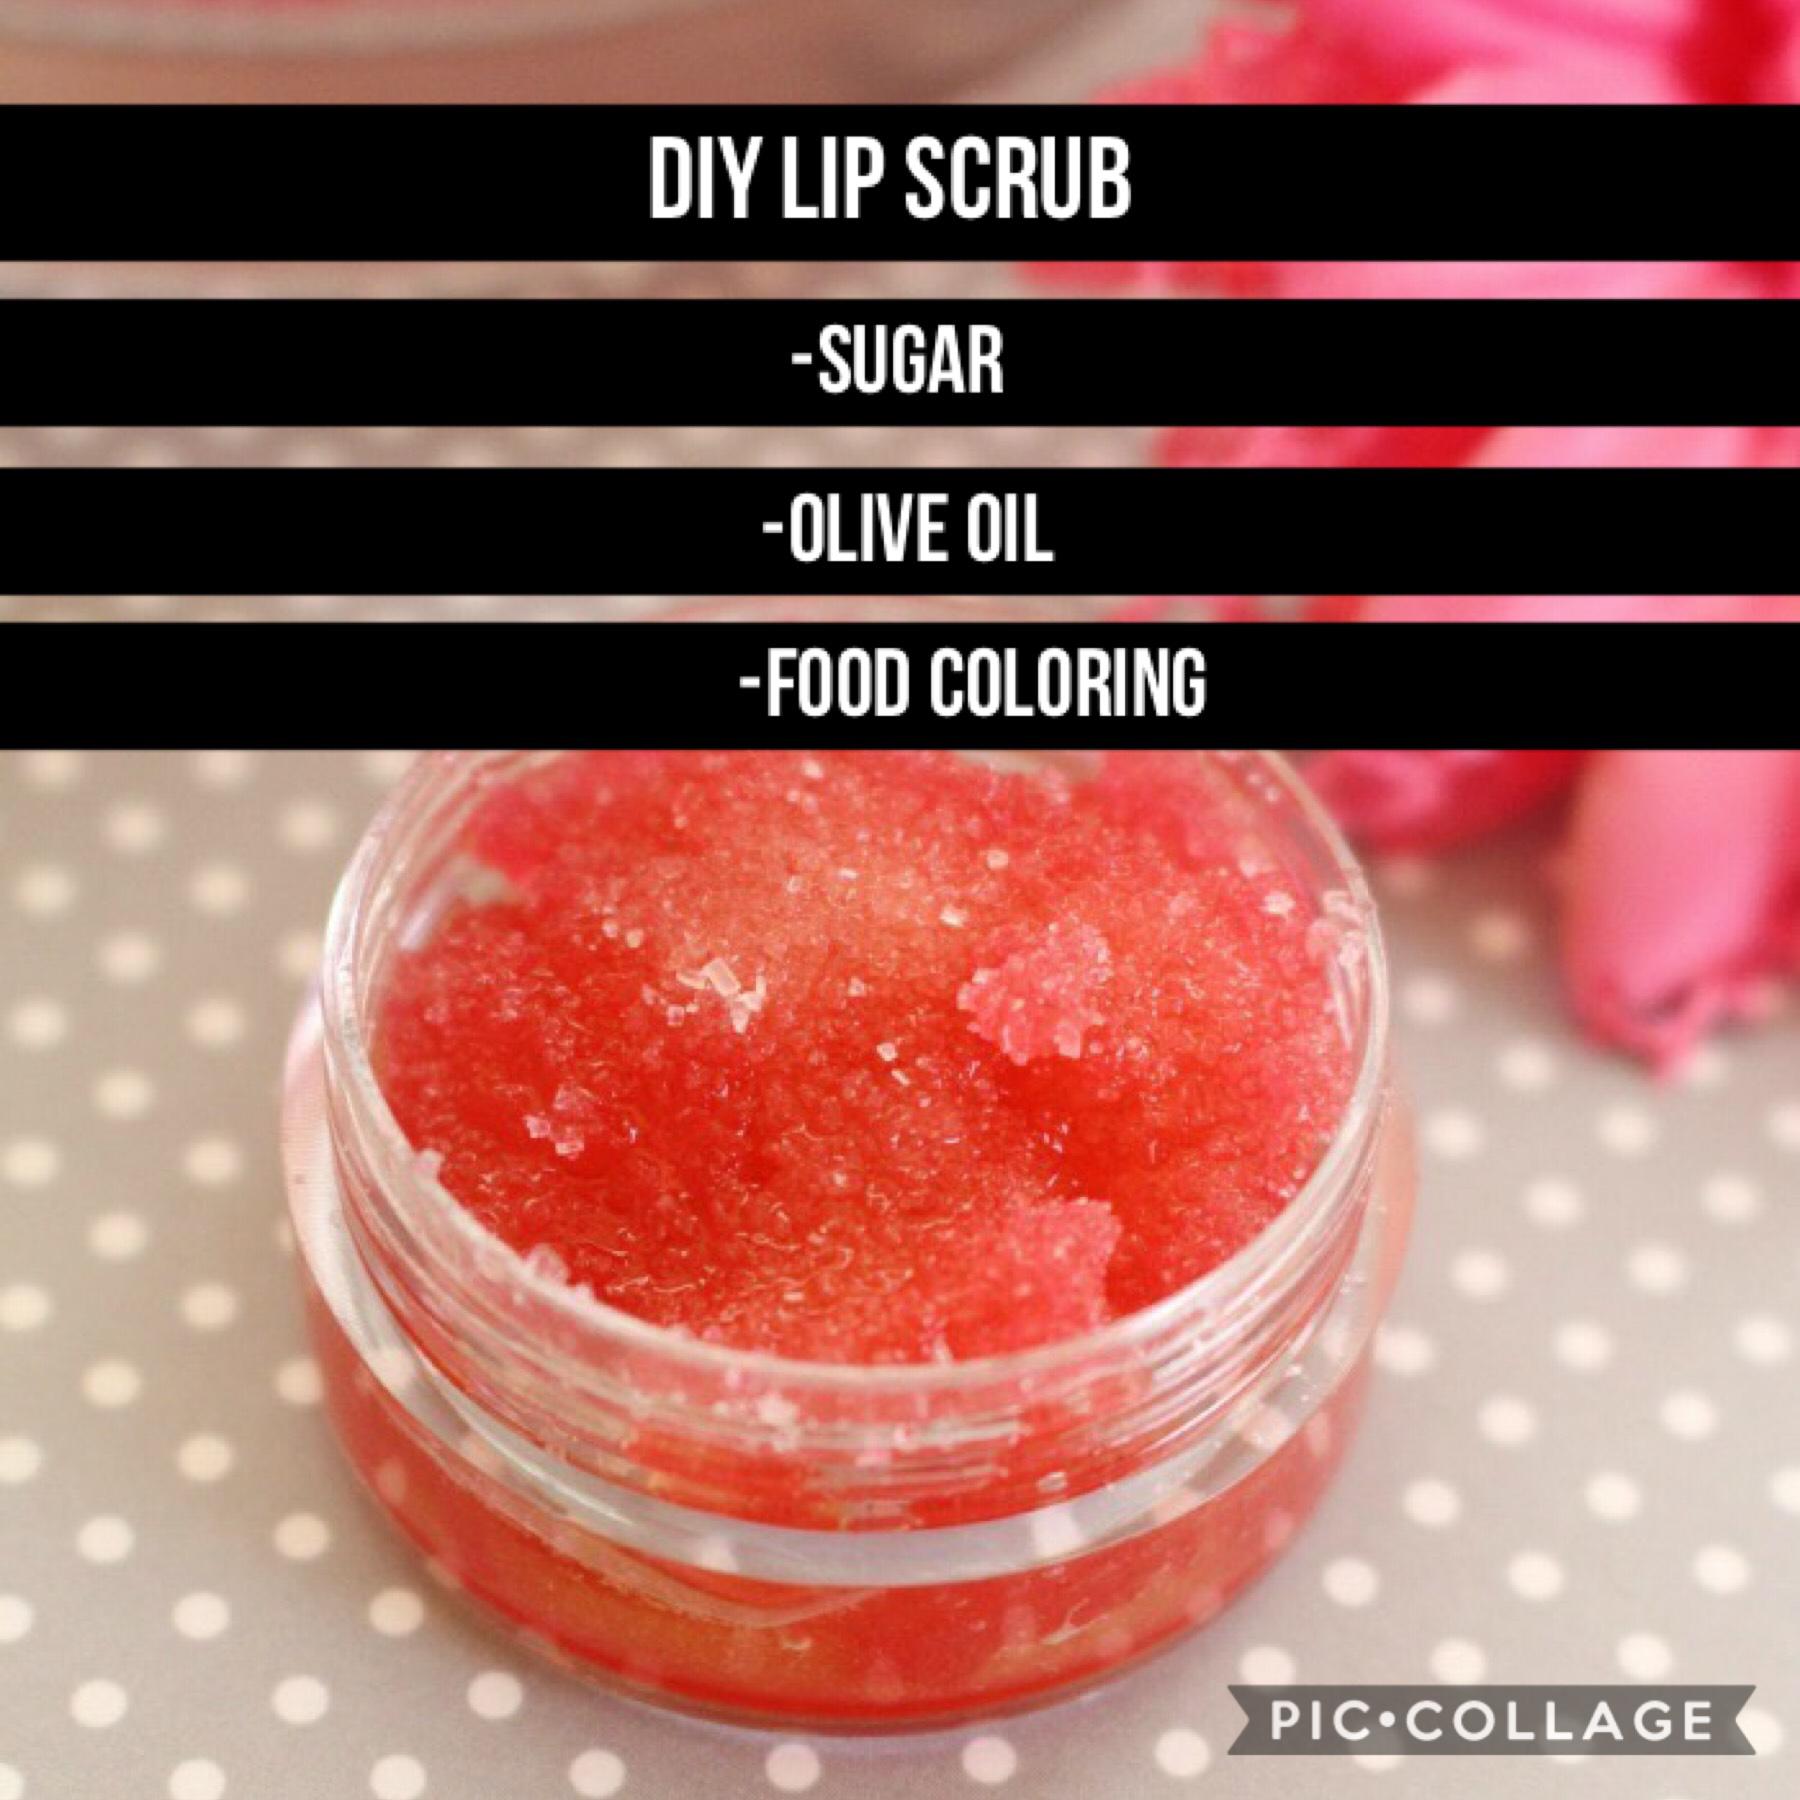 DIY lip scrub 💄 